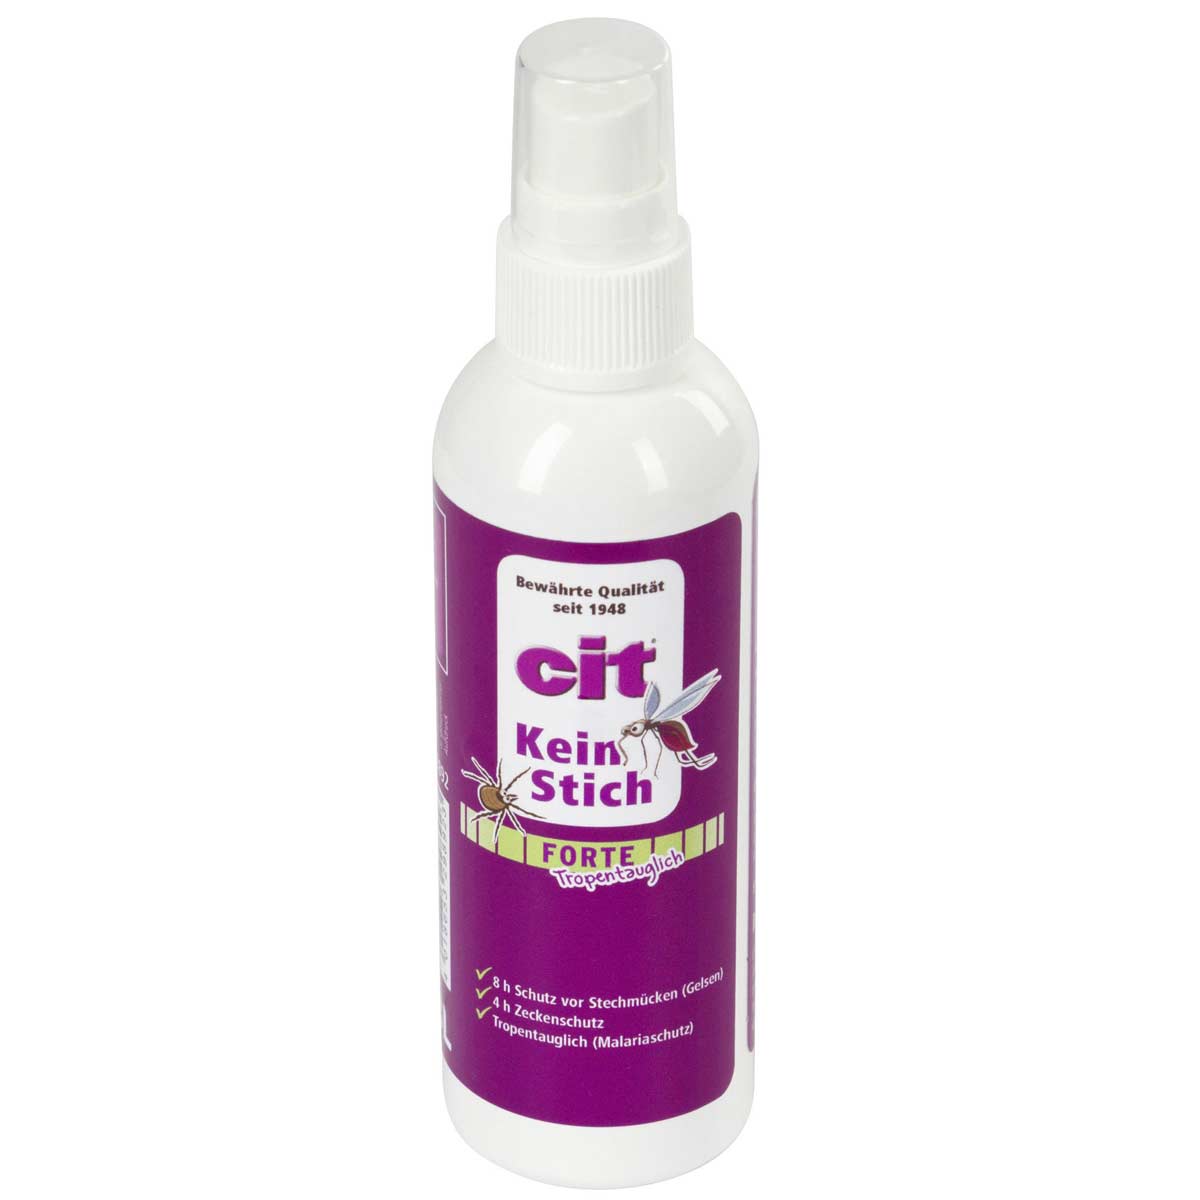 Cit KeinStich Forte Spray antizanzare, antizecche e repellente per insetti 100 ml